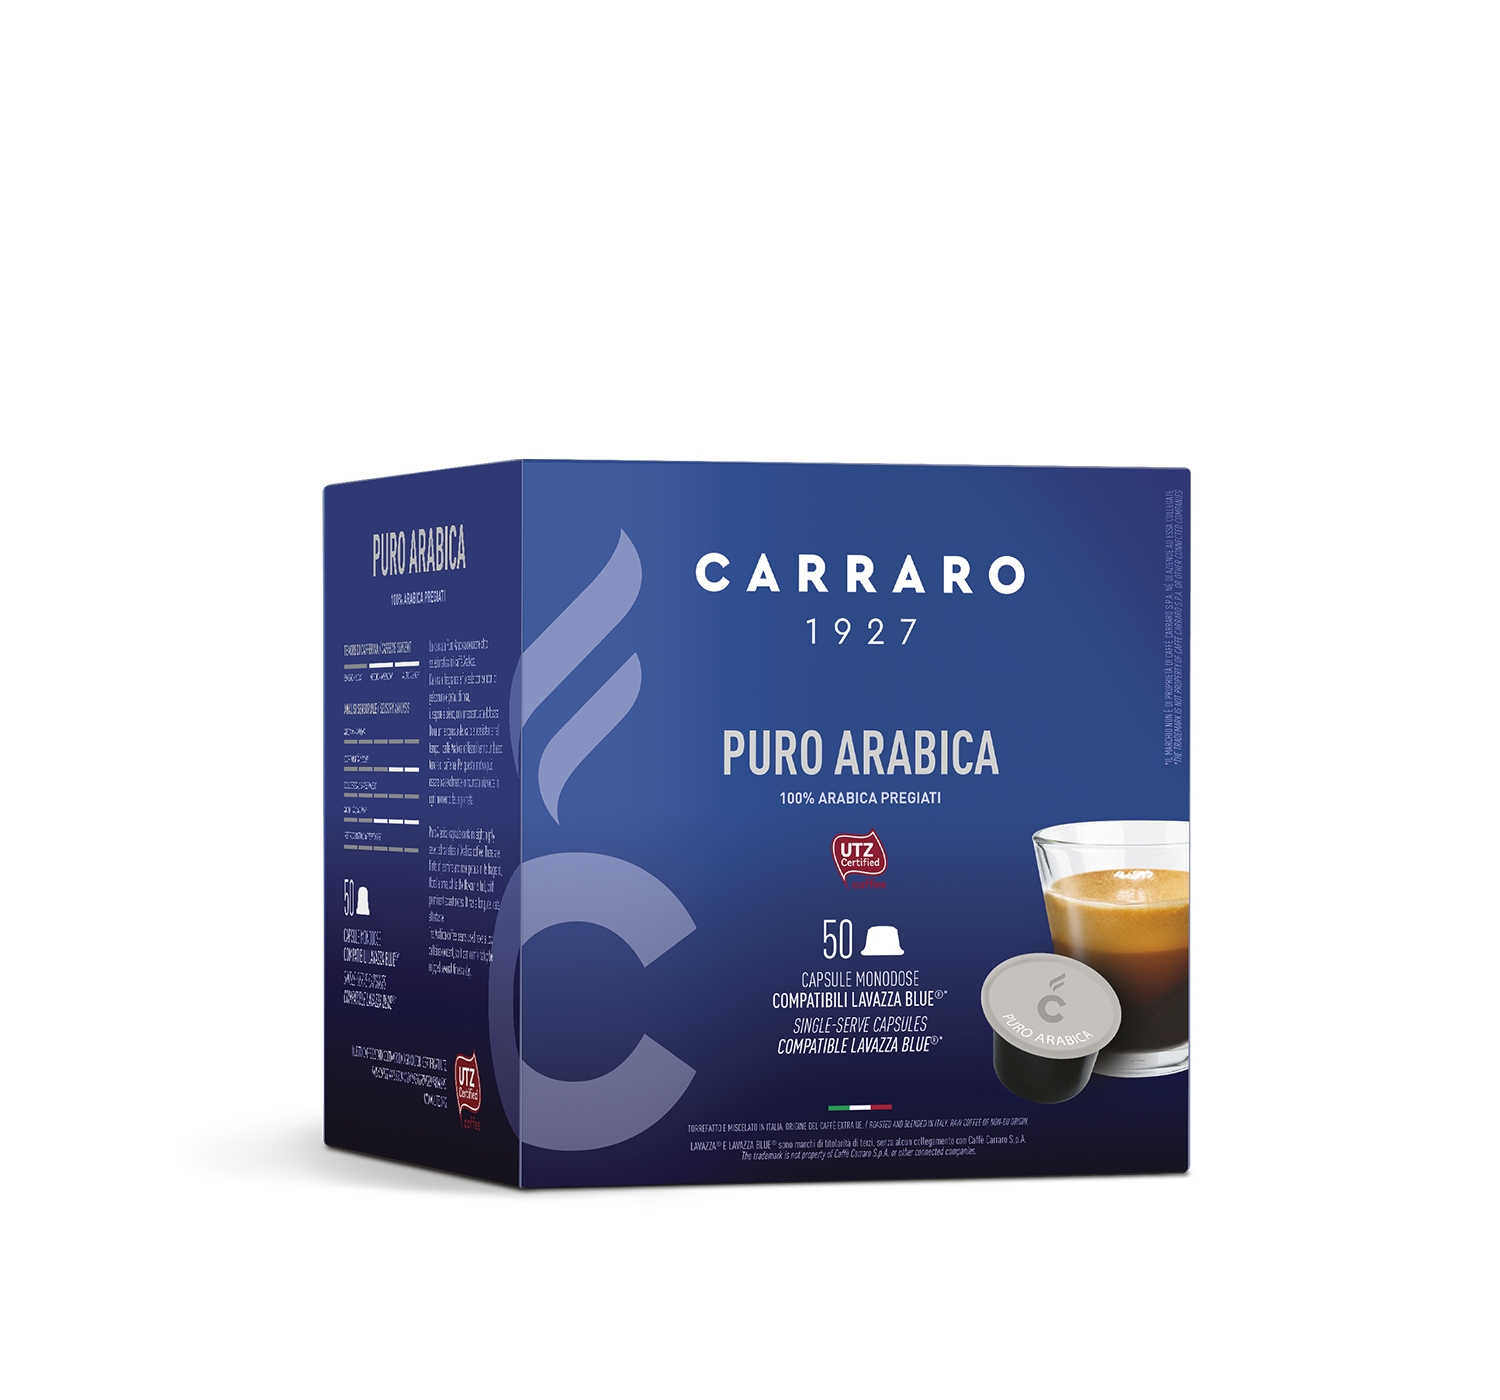 Capsule - Puro Arabica – 50 capsule compatibili Lavazza Blue®* - Shop online Caffè Carraro